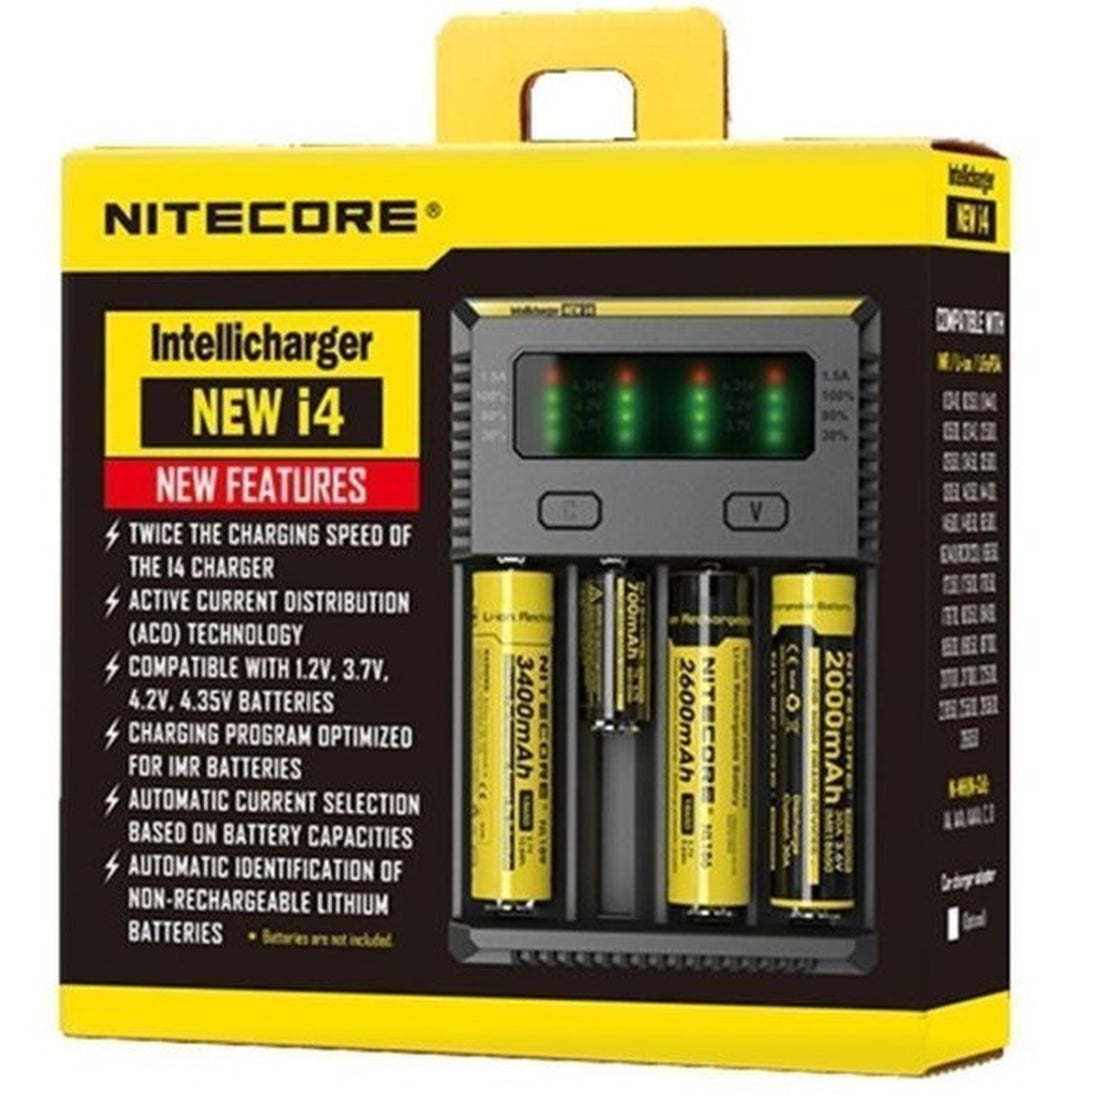 NITECORE Intellicharger NEW i4 W/18650 Batteries | Cloud City UK.